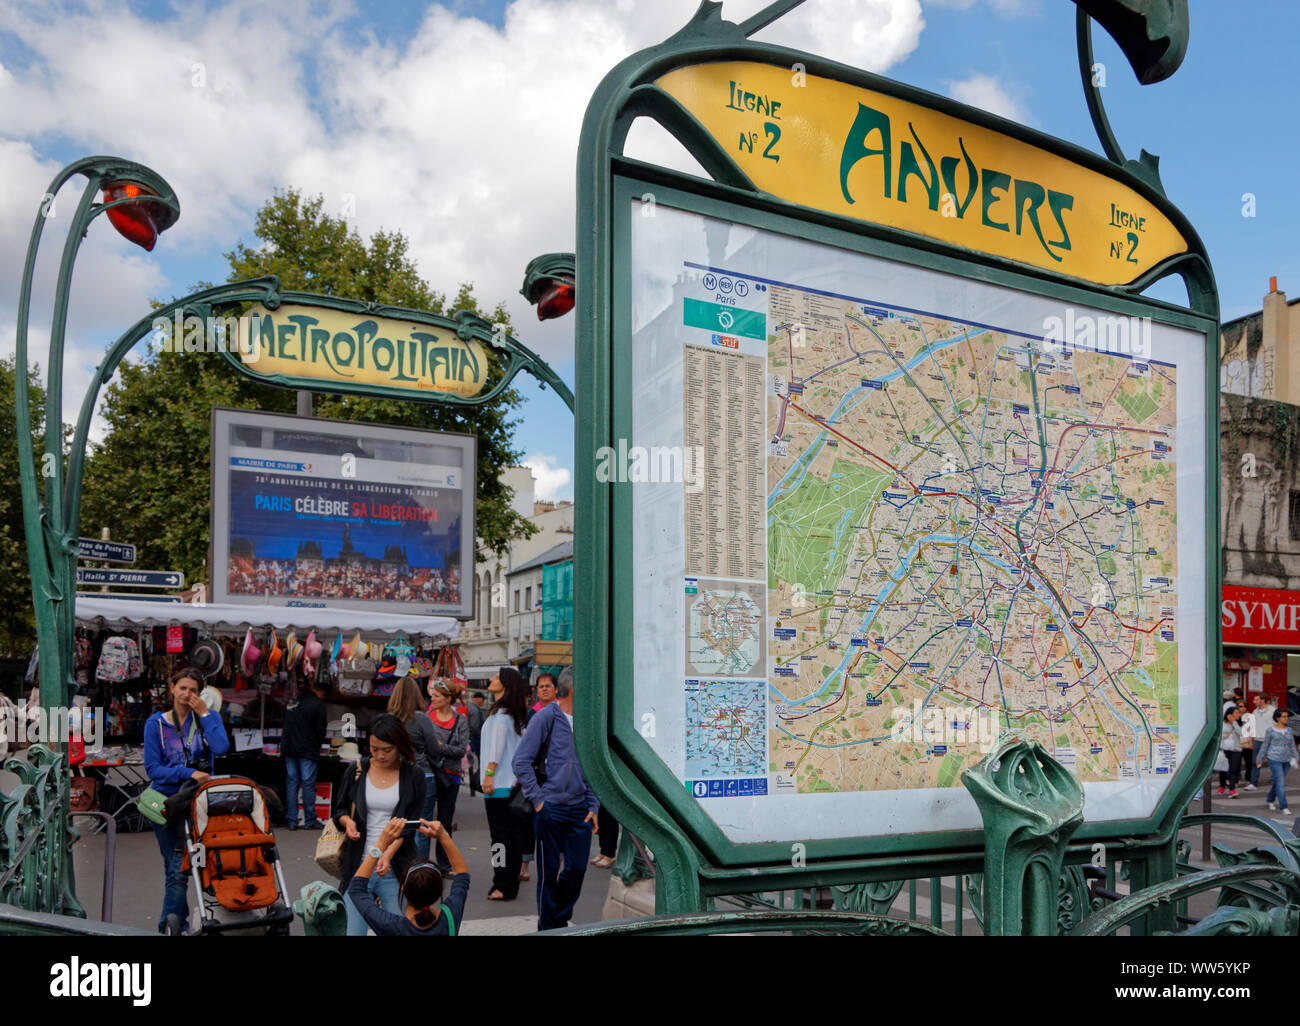 France, Paris, metro plan, signs, Anvers, Metropolitain, art nouveau, people Stock Photo